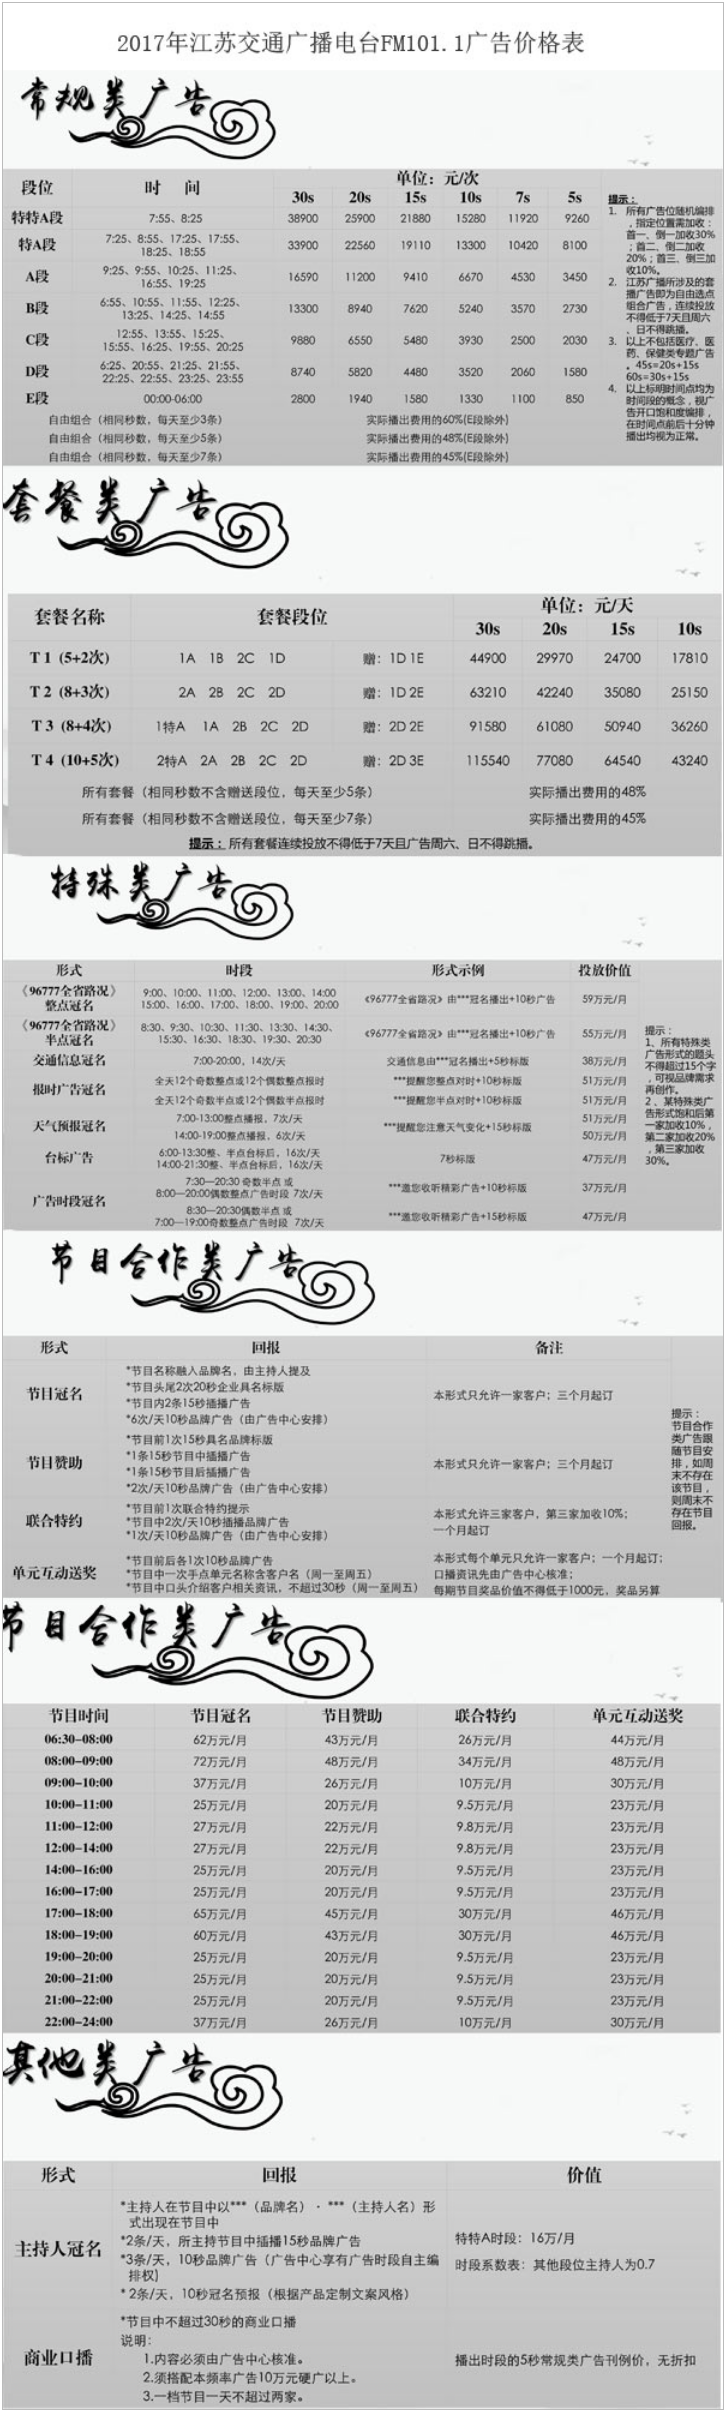 2017江苏人民广播电台交通台 FM101.1广告报价表.png